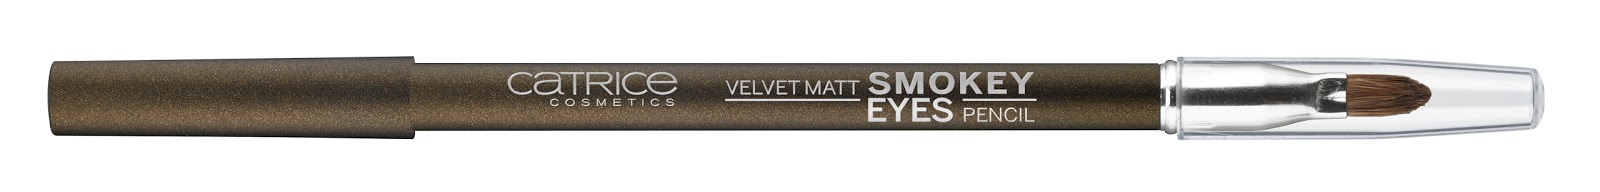 Catrice - Velvet Matt Smokey Eyes Pencil